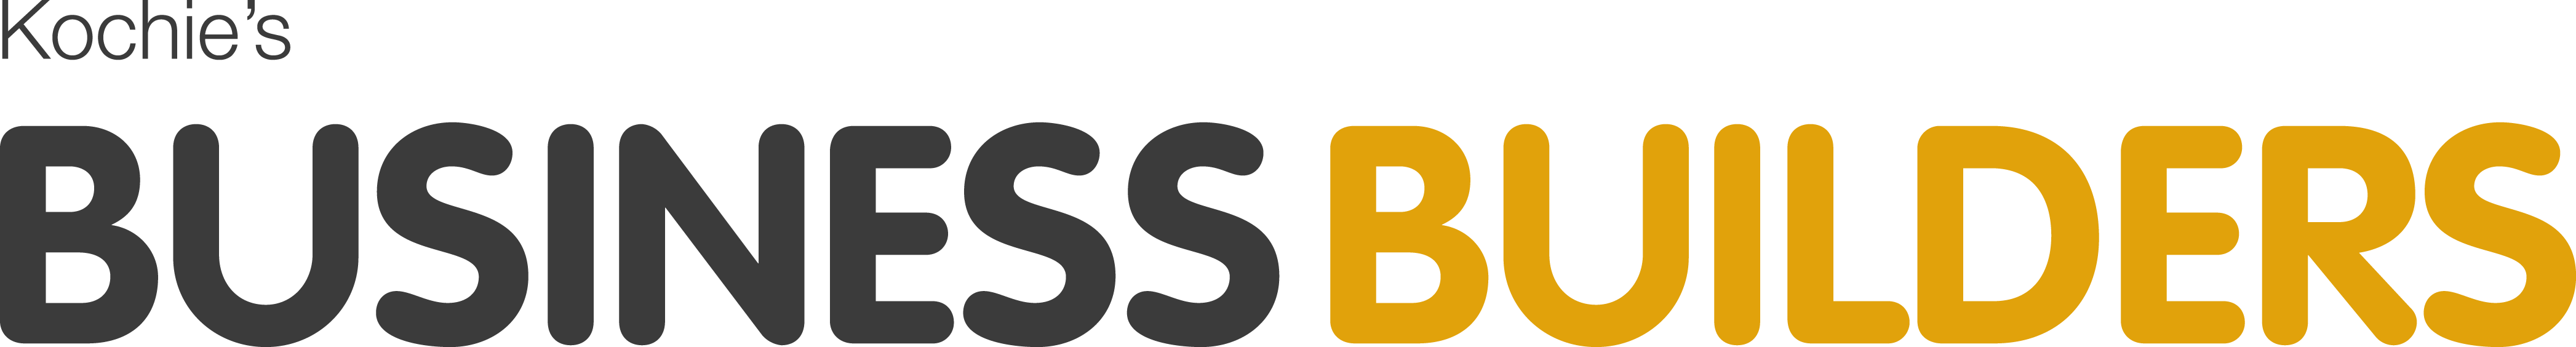 KBB_logo_horgiz